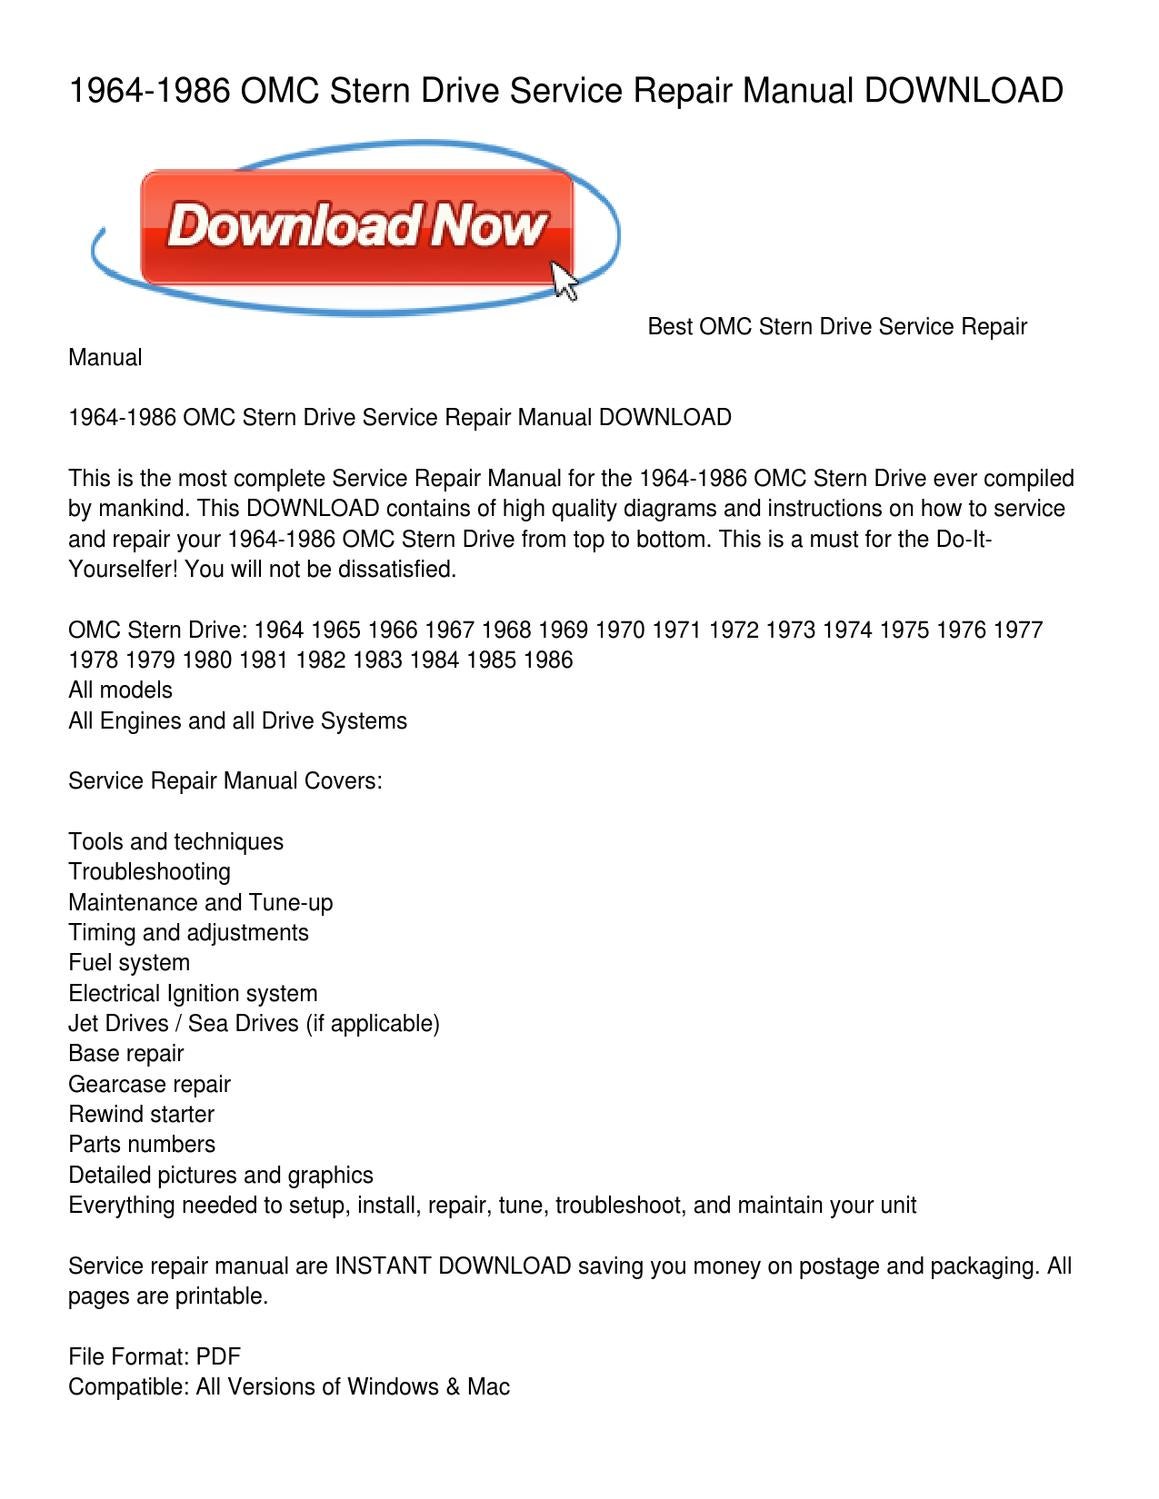 omc repair manual download free